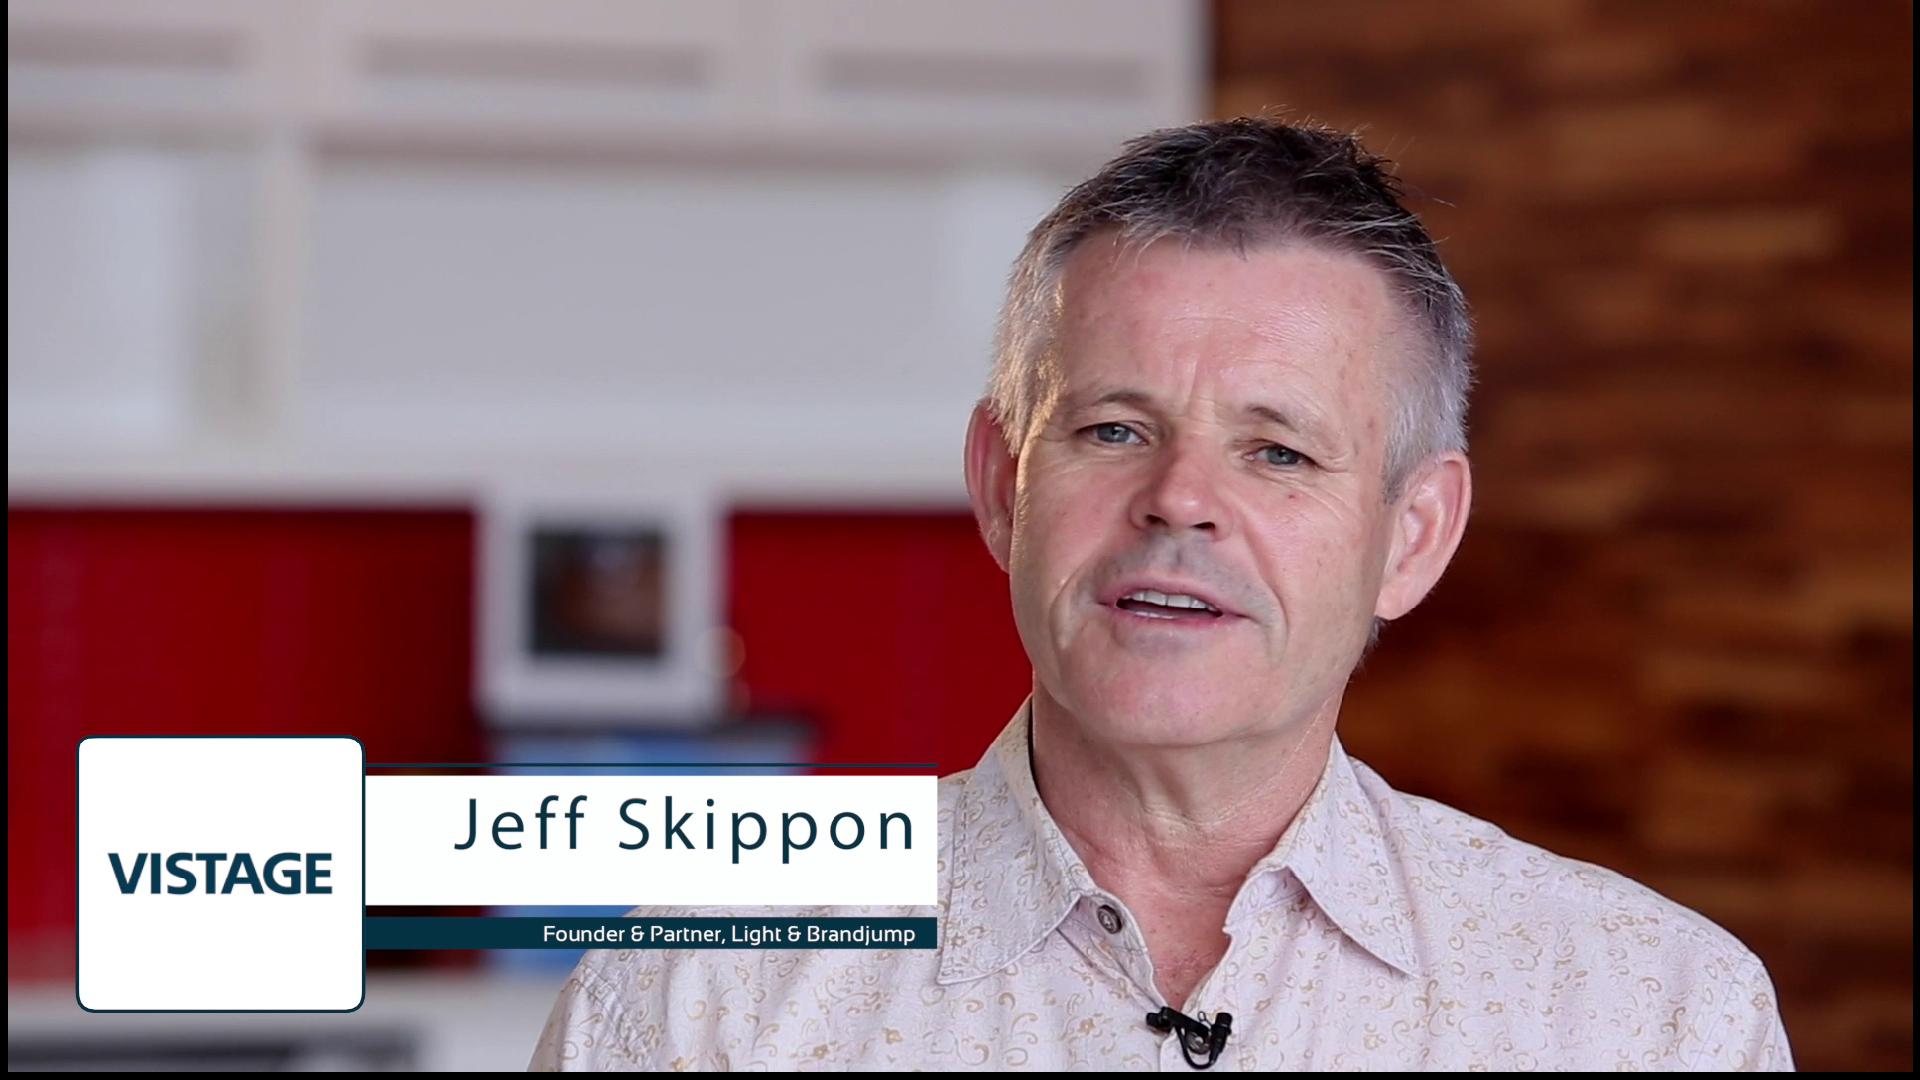 Jeff Skippon